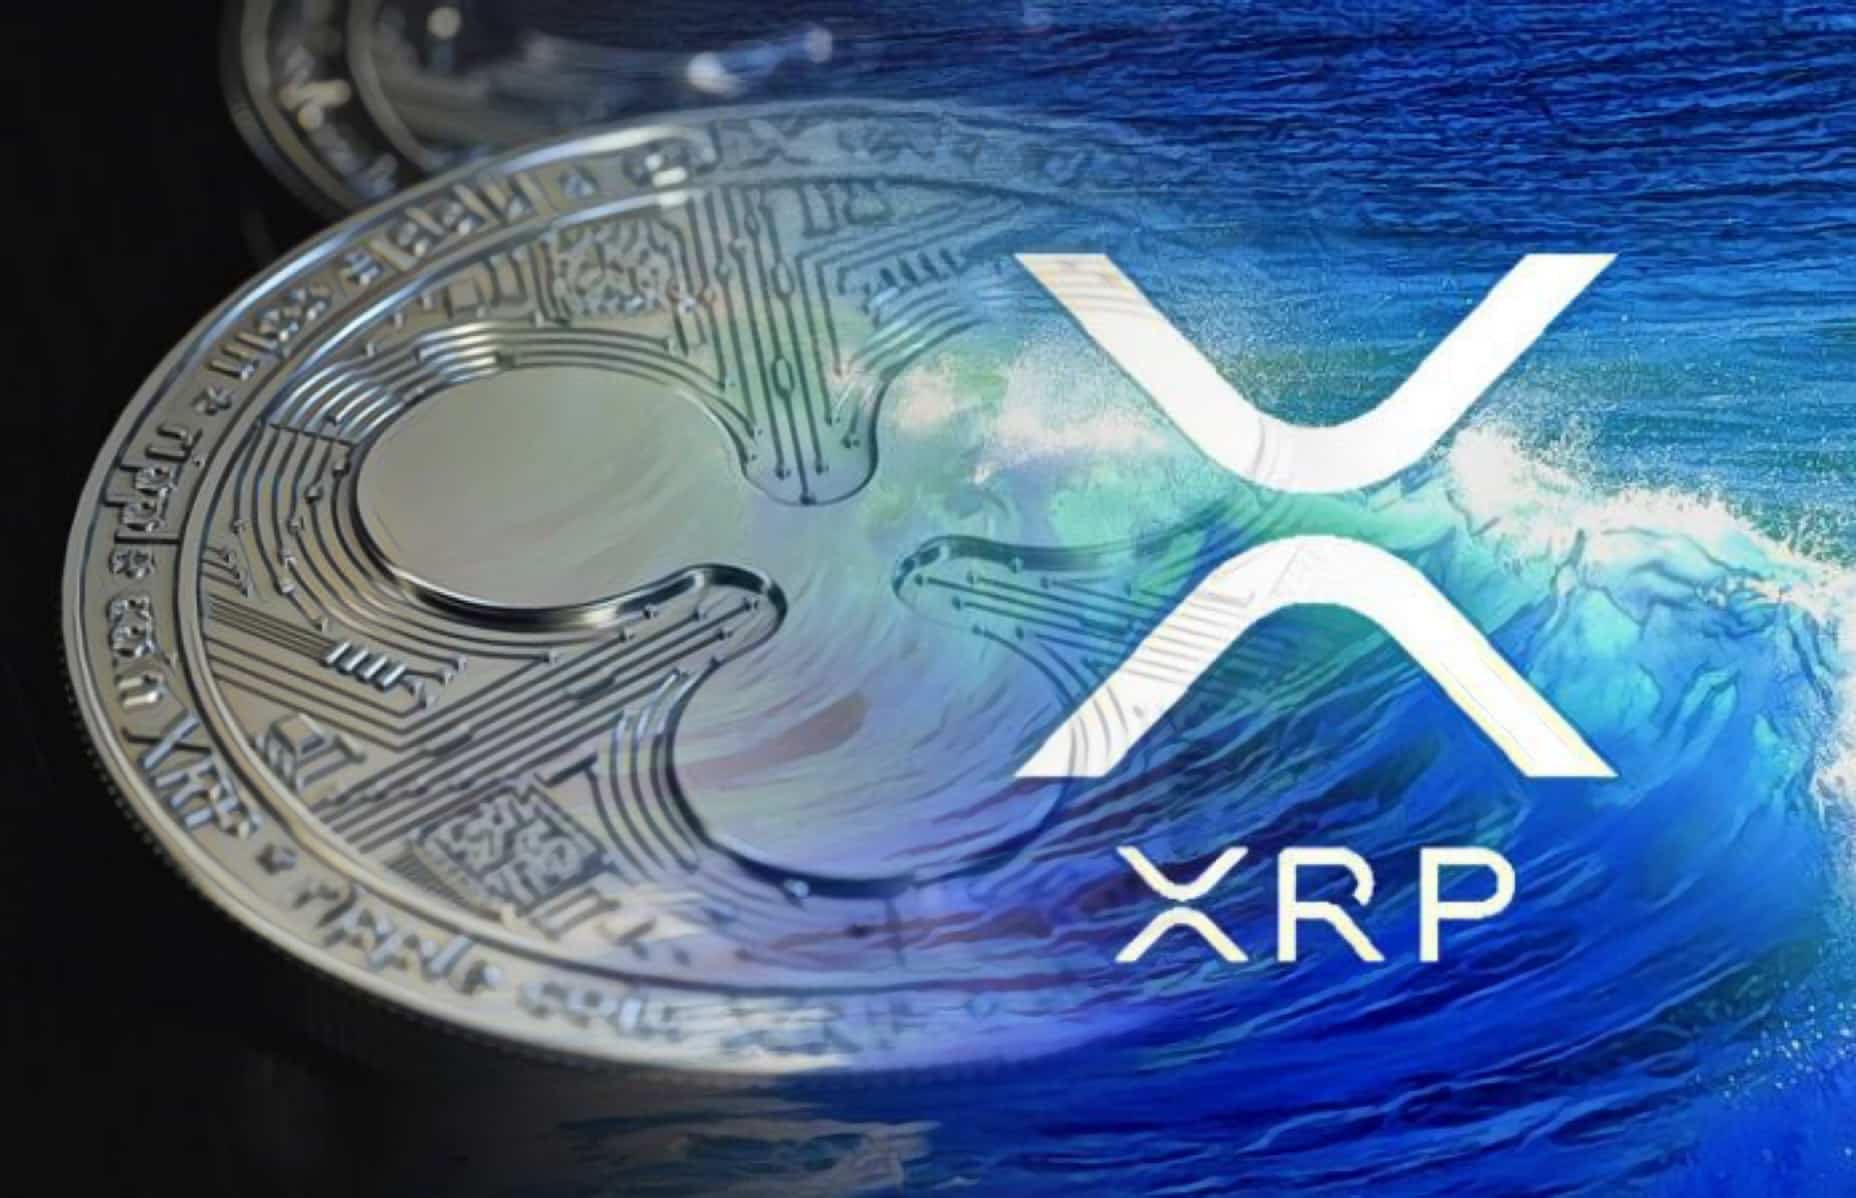 xrp listing on coinbase